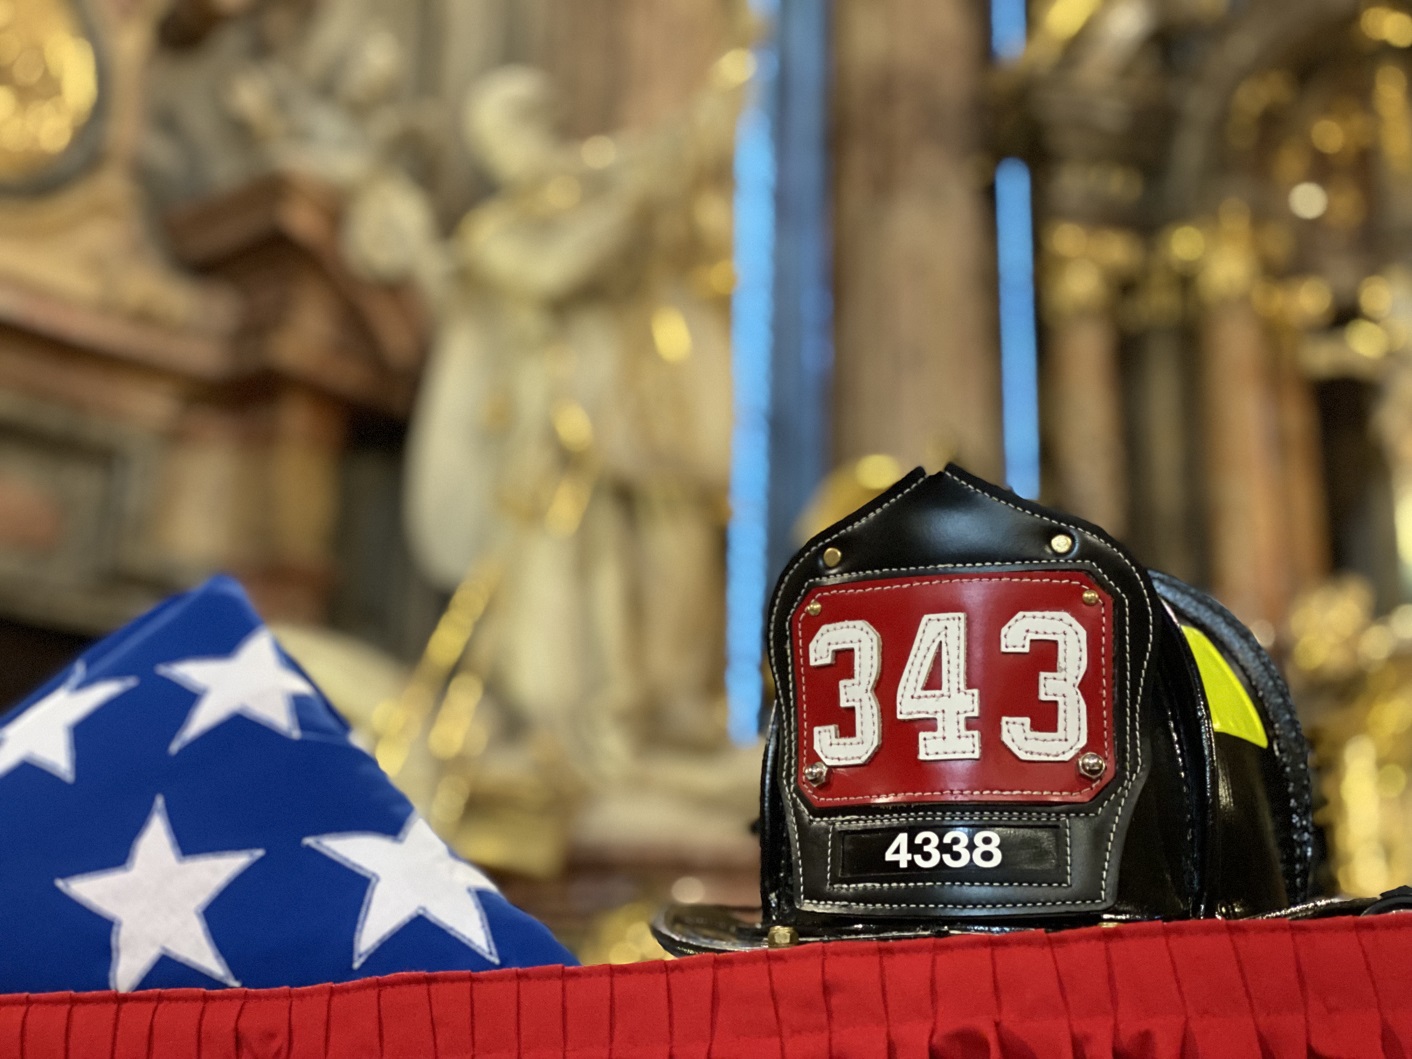 12_Pietní akt v chrámu sv. Mikuláše, pohled na přilbu amerického hasiče a americkou vlajku před oltářem (2).jpg